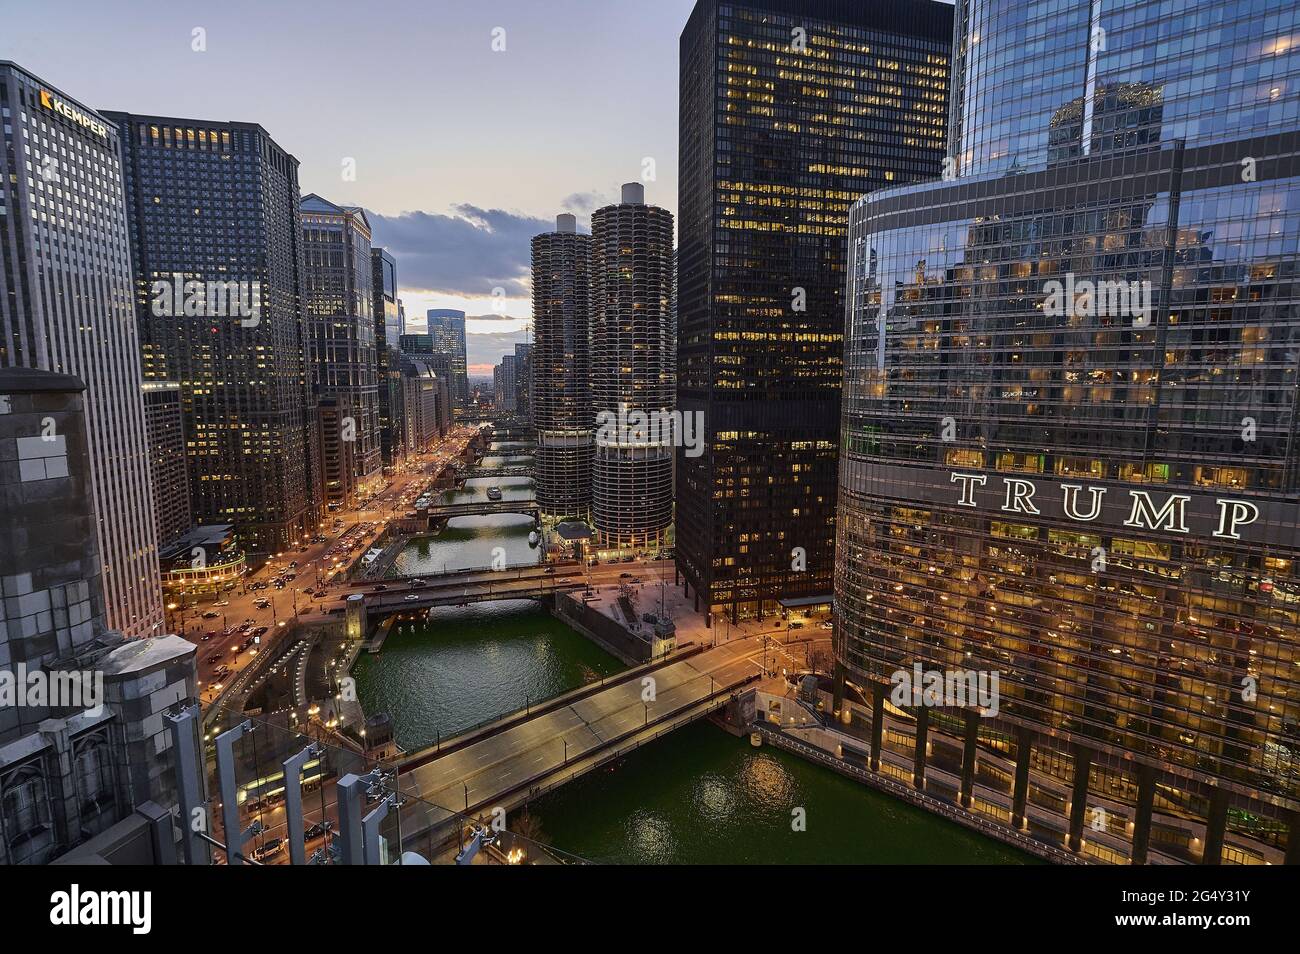 Stati Uniti, Illinois, Chicago: Vista notturna del Loop e del fiume Chicago dalla terrazza del London House Hotel. Sullo sfondo, a destra Foto Stock